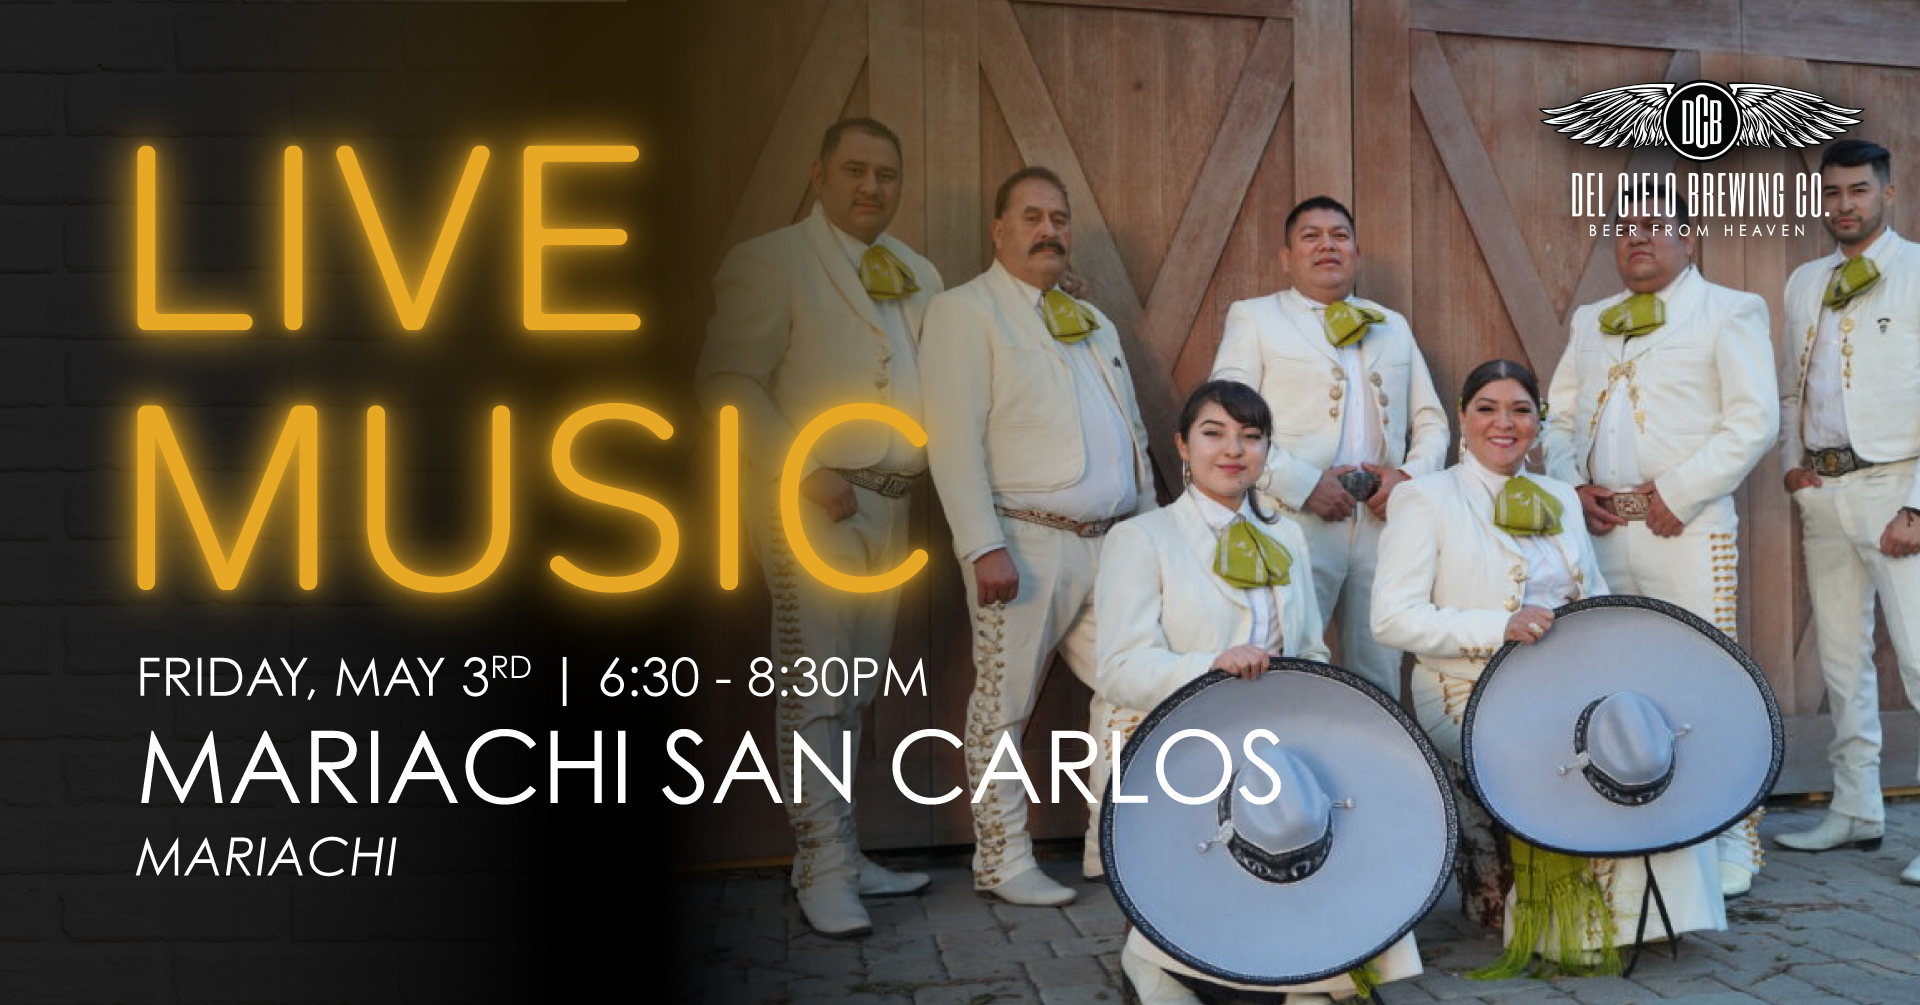 live music mariachi san carlos